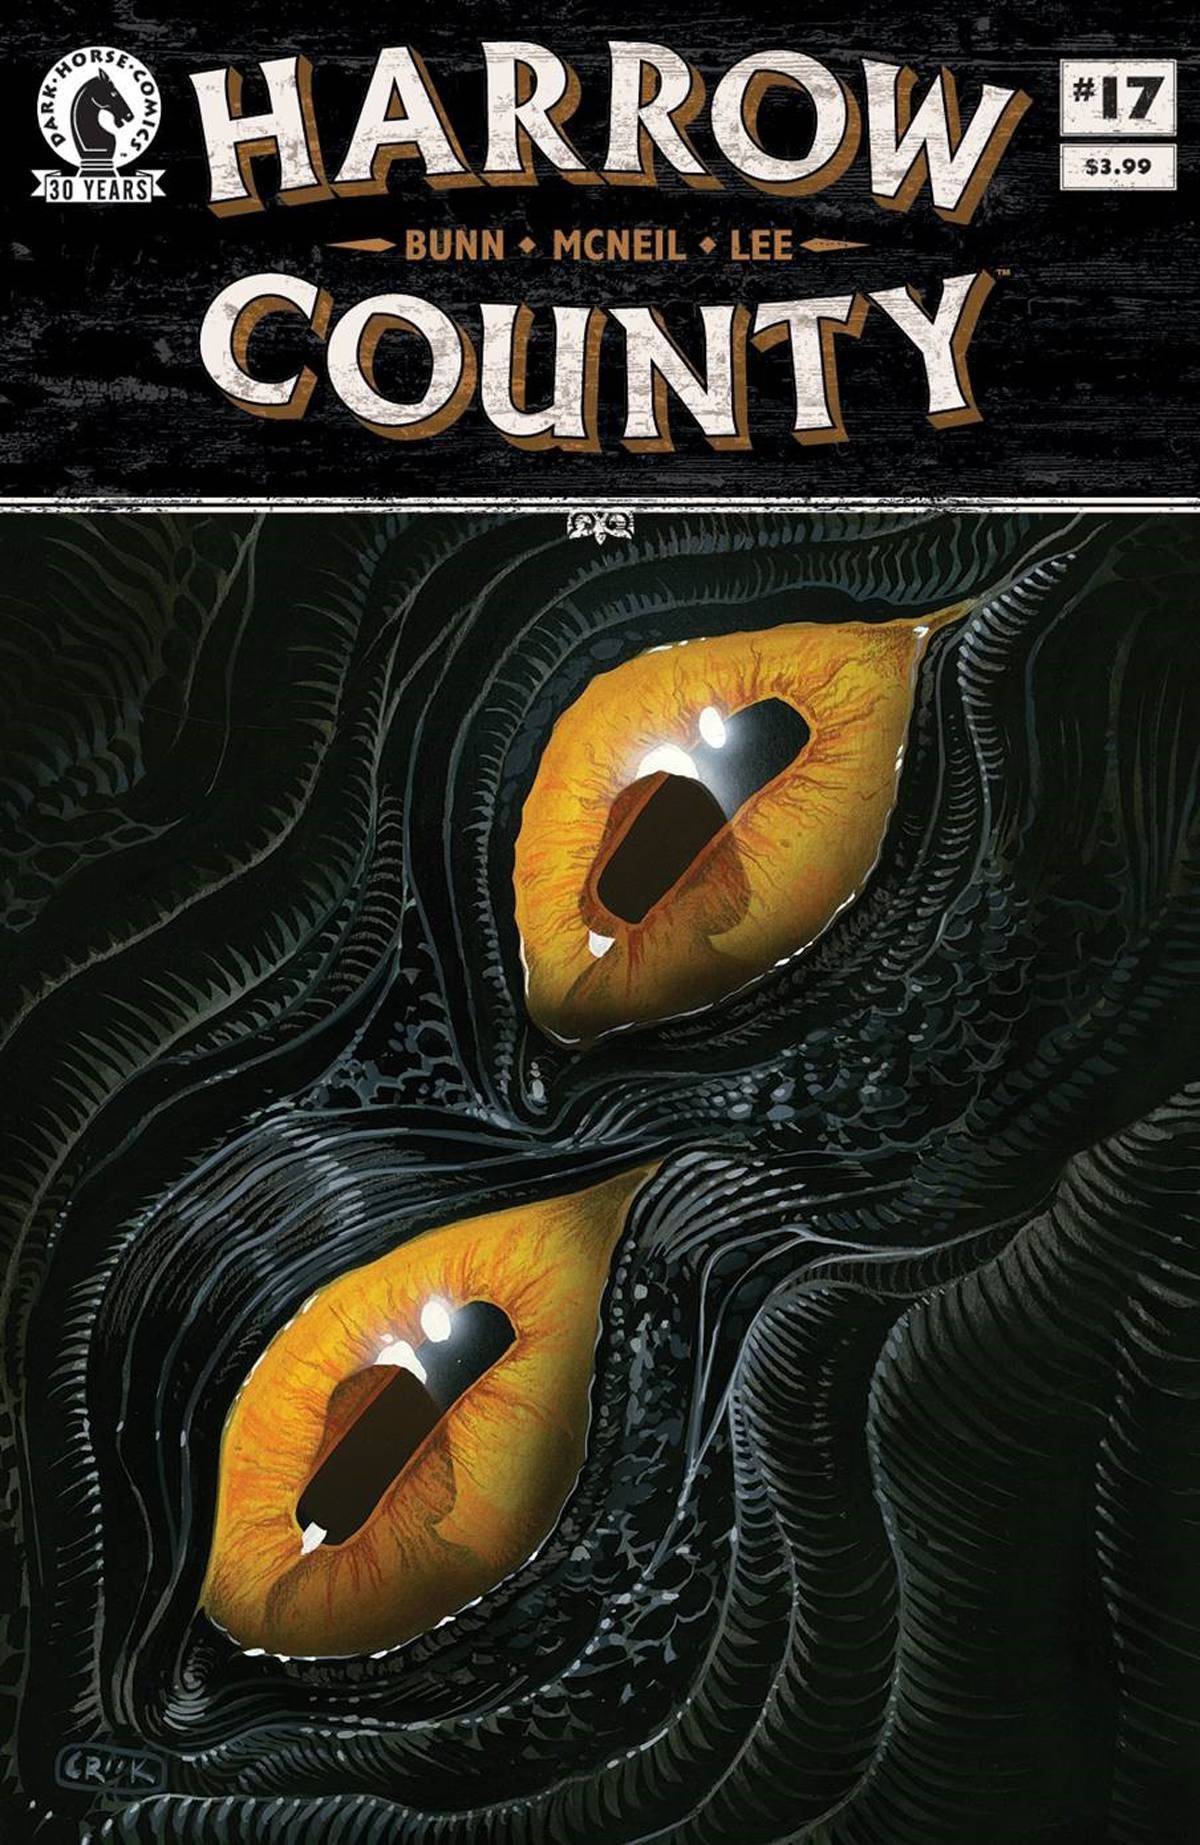 Harrow County #17 Comic